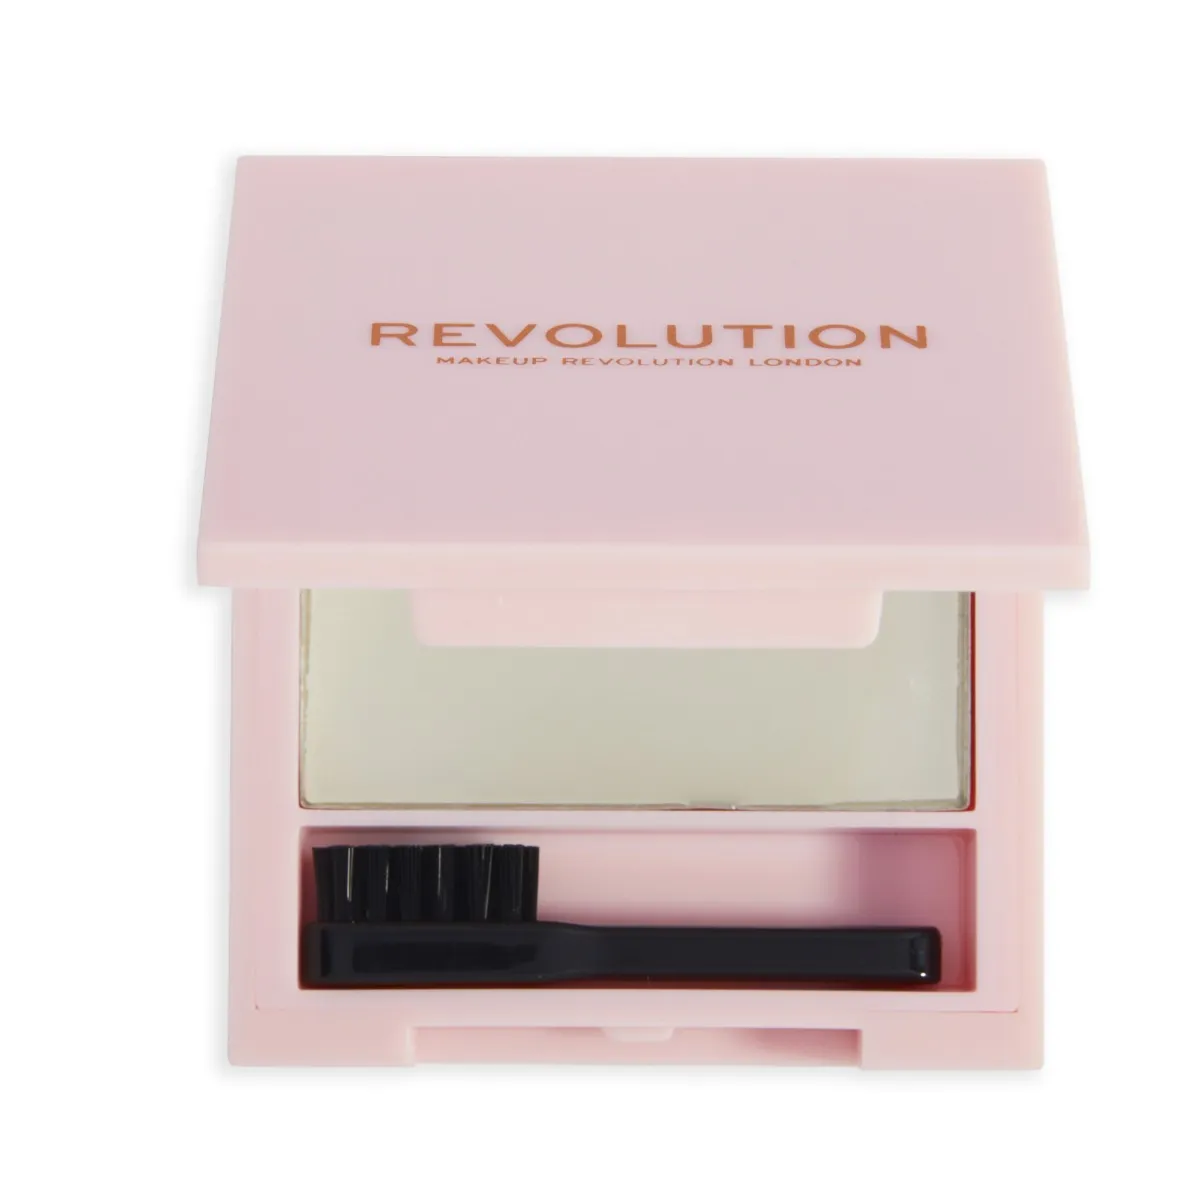 Makeup Revolution Rehab Soap & Care Styler mýdlo na obočí 5 g